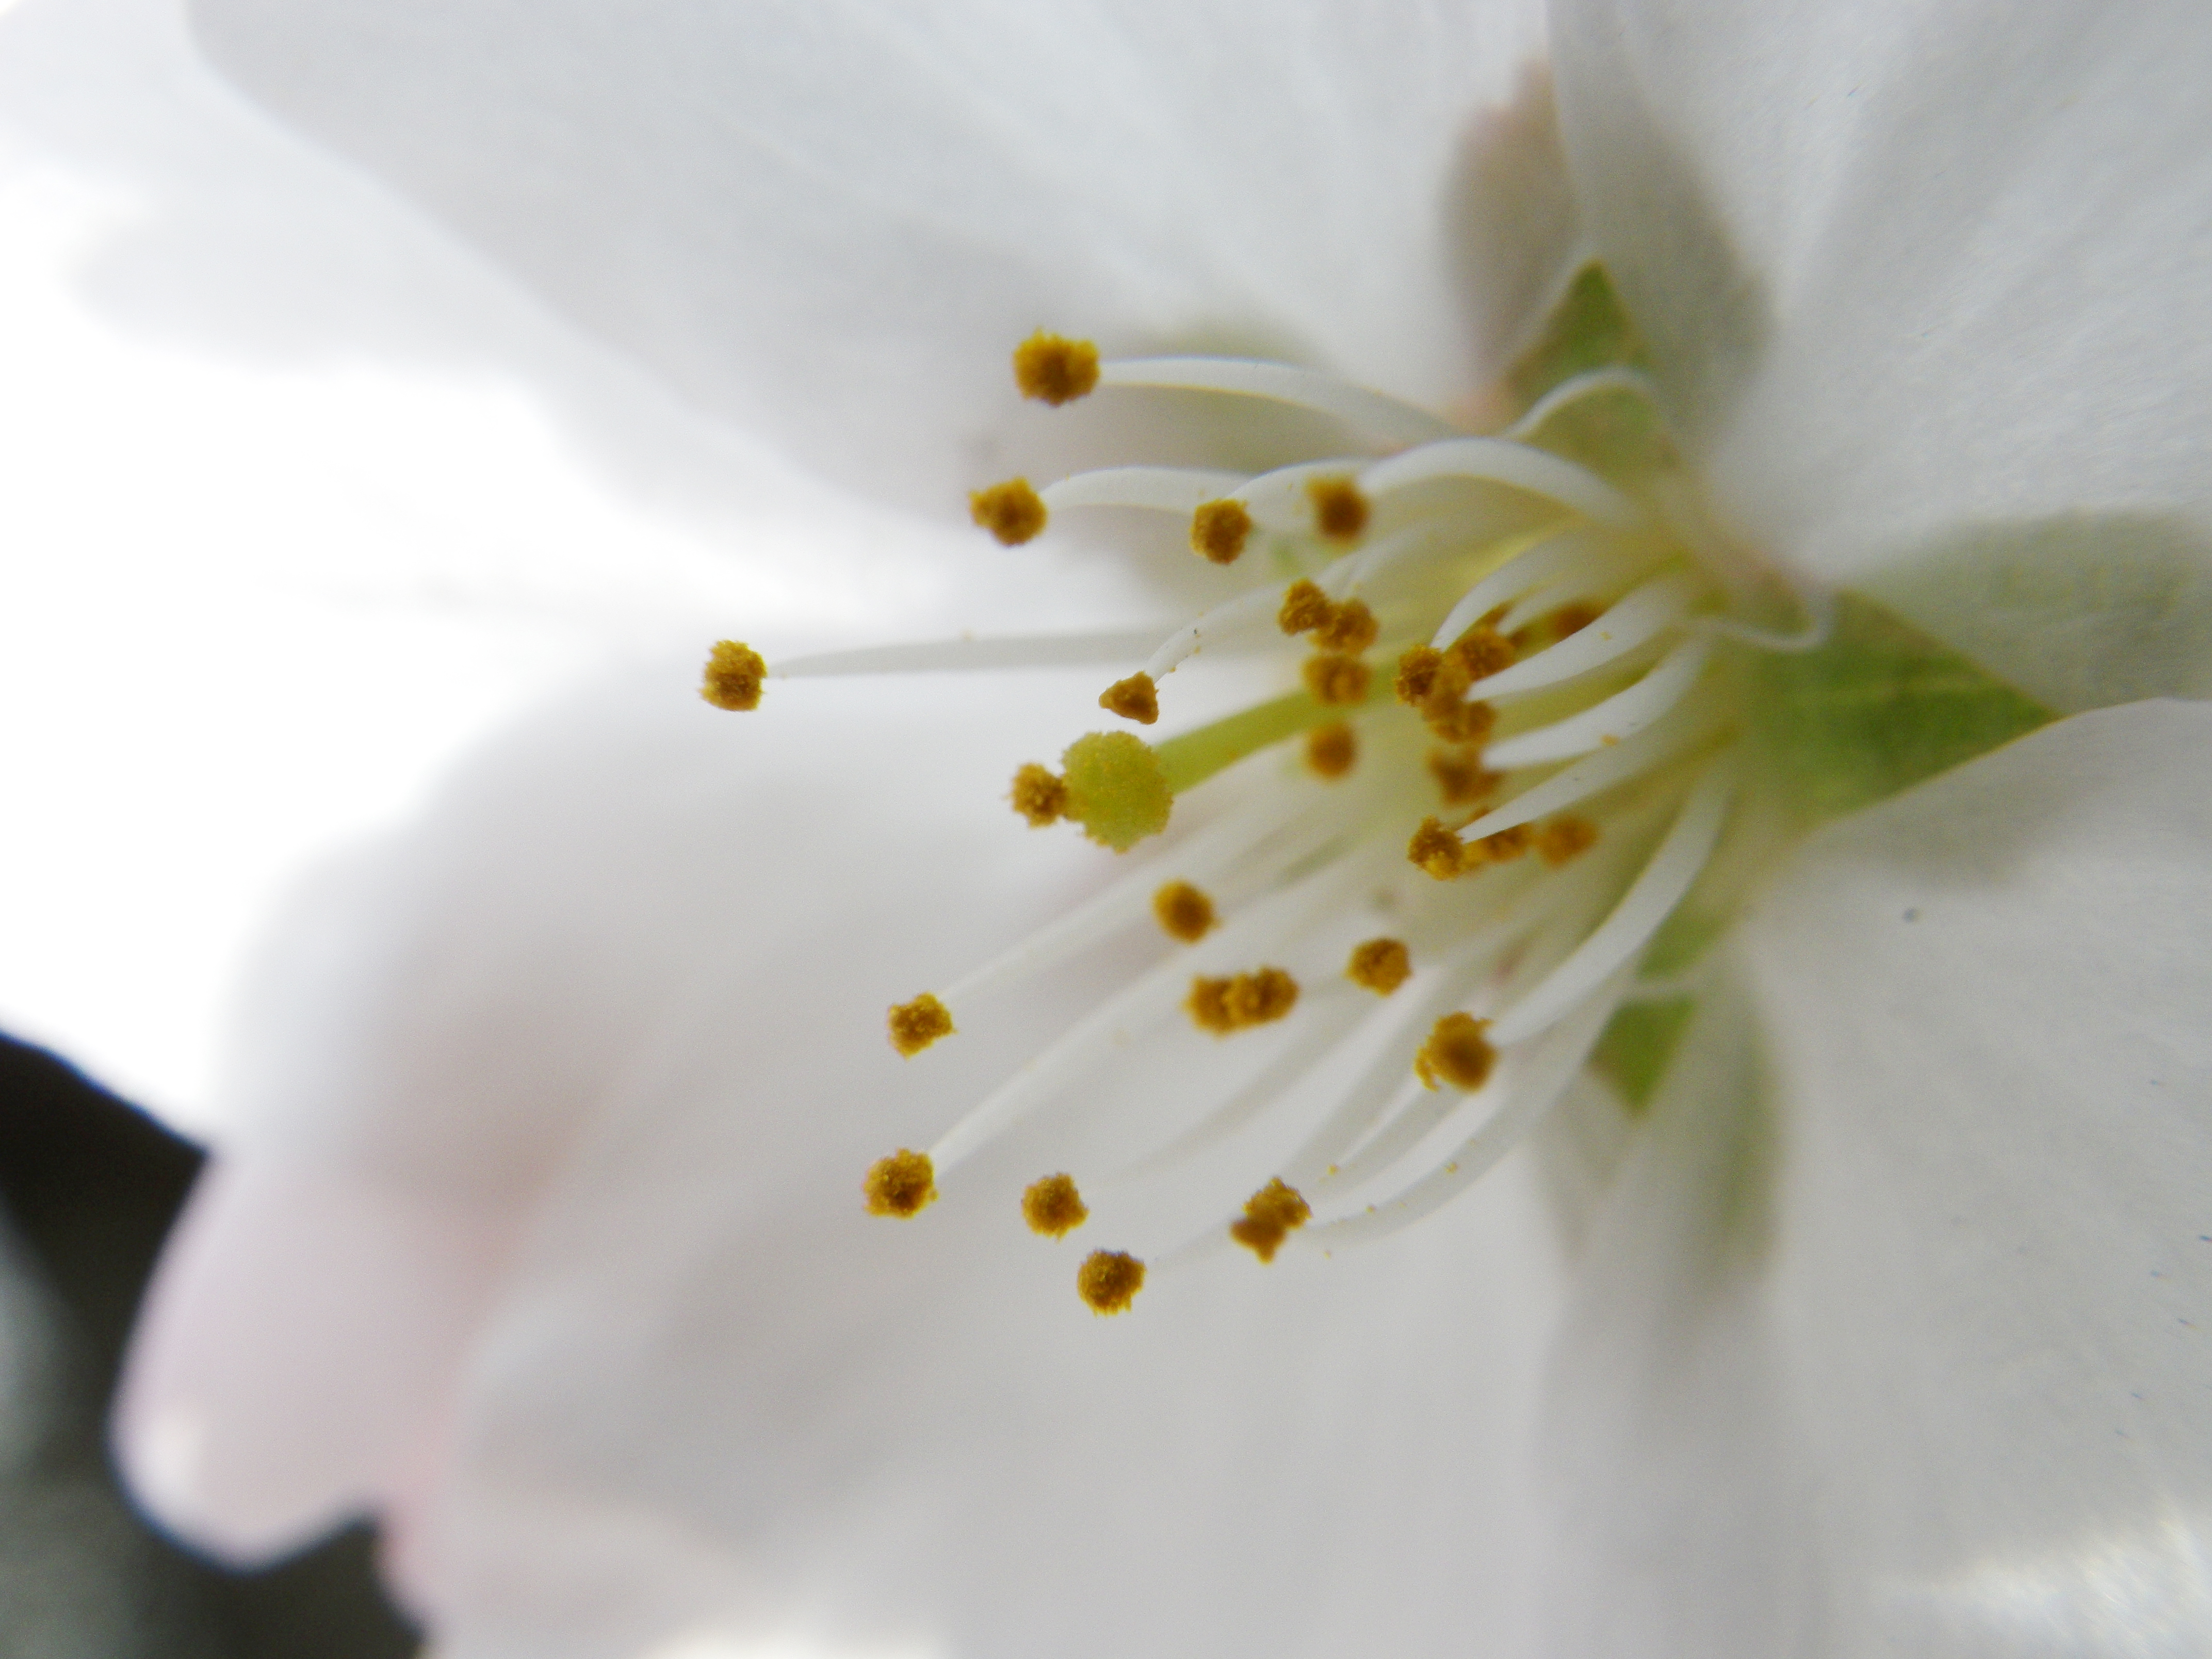 桜の花のひとつに思いっきり近付いて撮影。ピントは花の中心のシベに合わせています